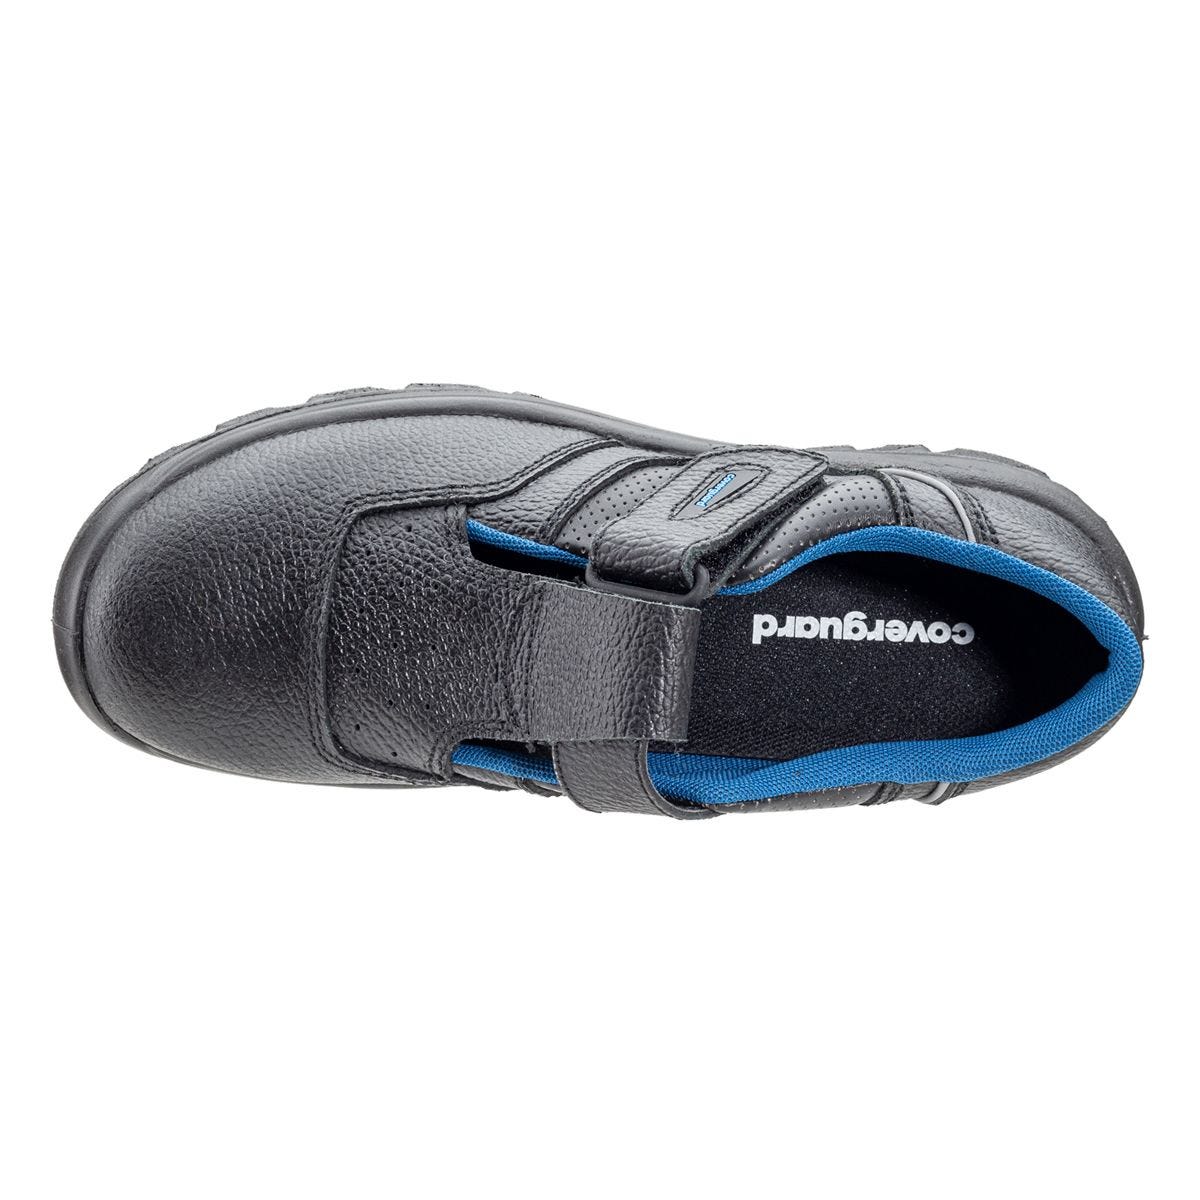 Sandales de sécurité basses Bosco II noir - Coverguard - Taille 35 3